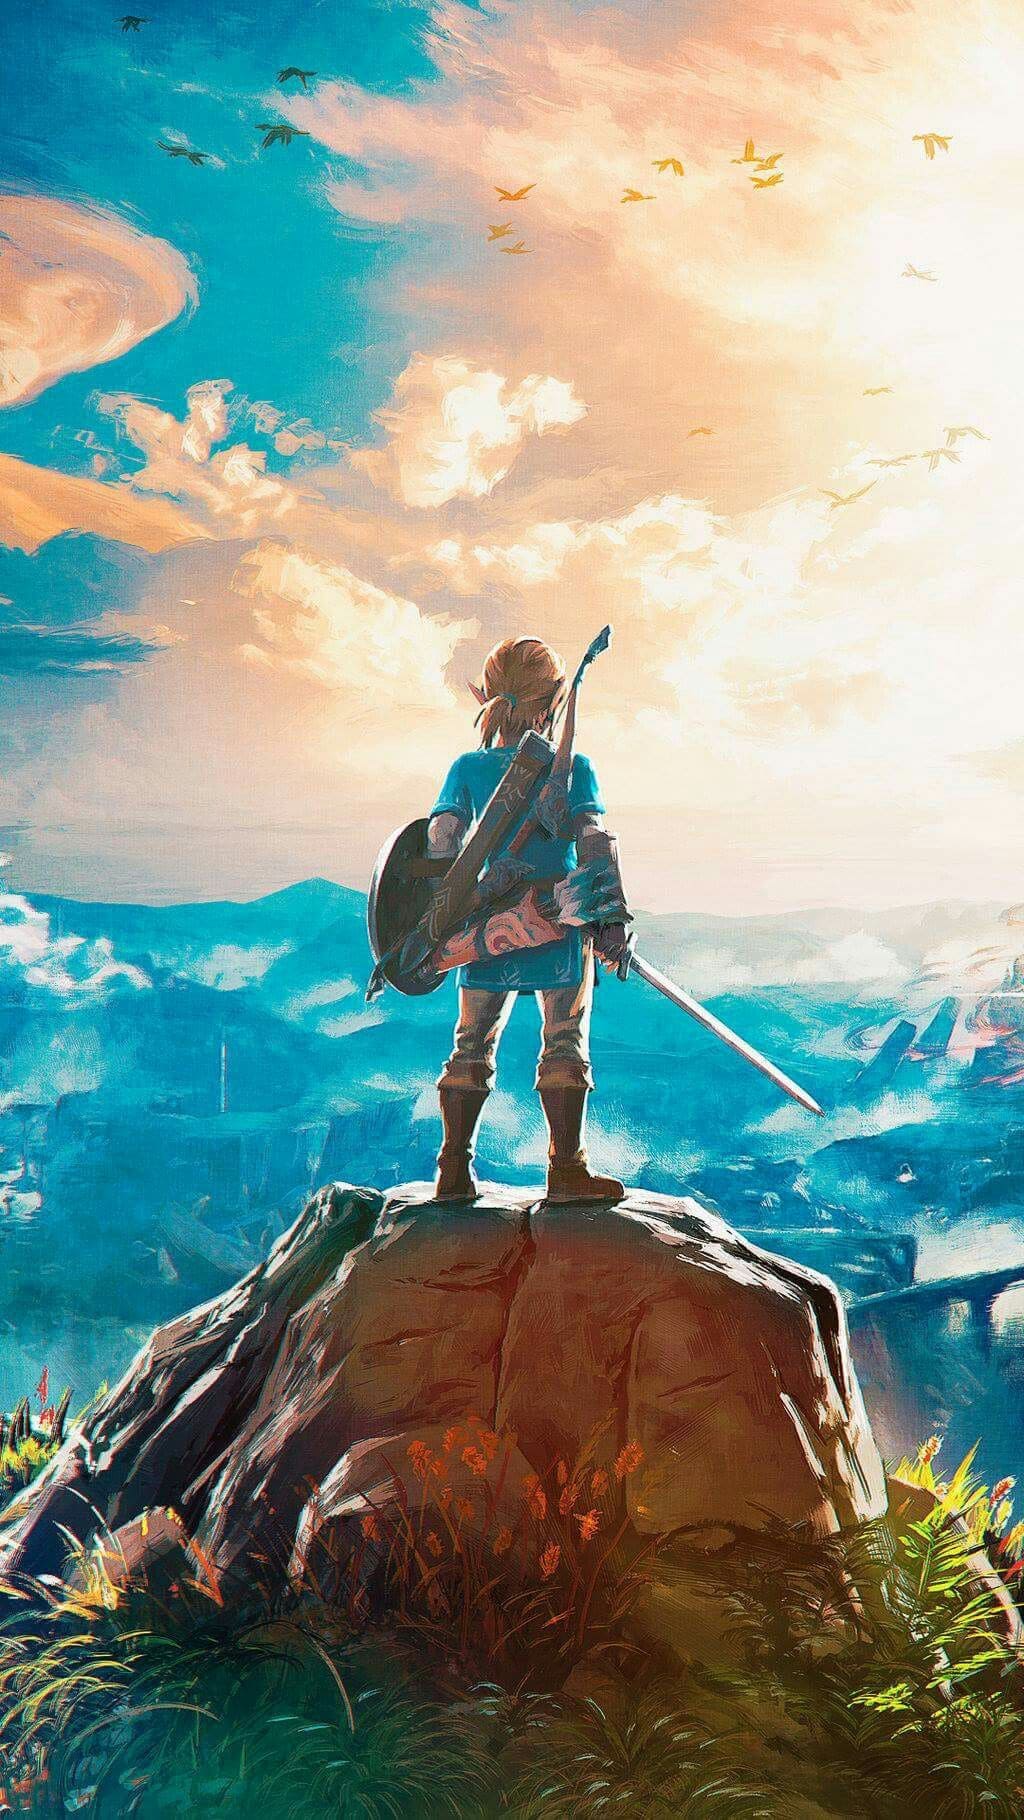 Legend of Zelda Wallpapers - Top 65